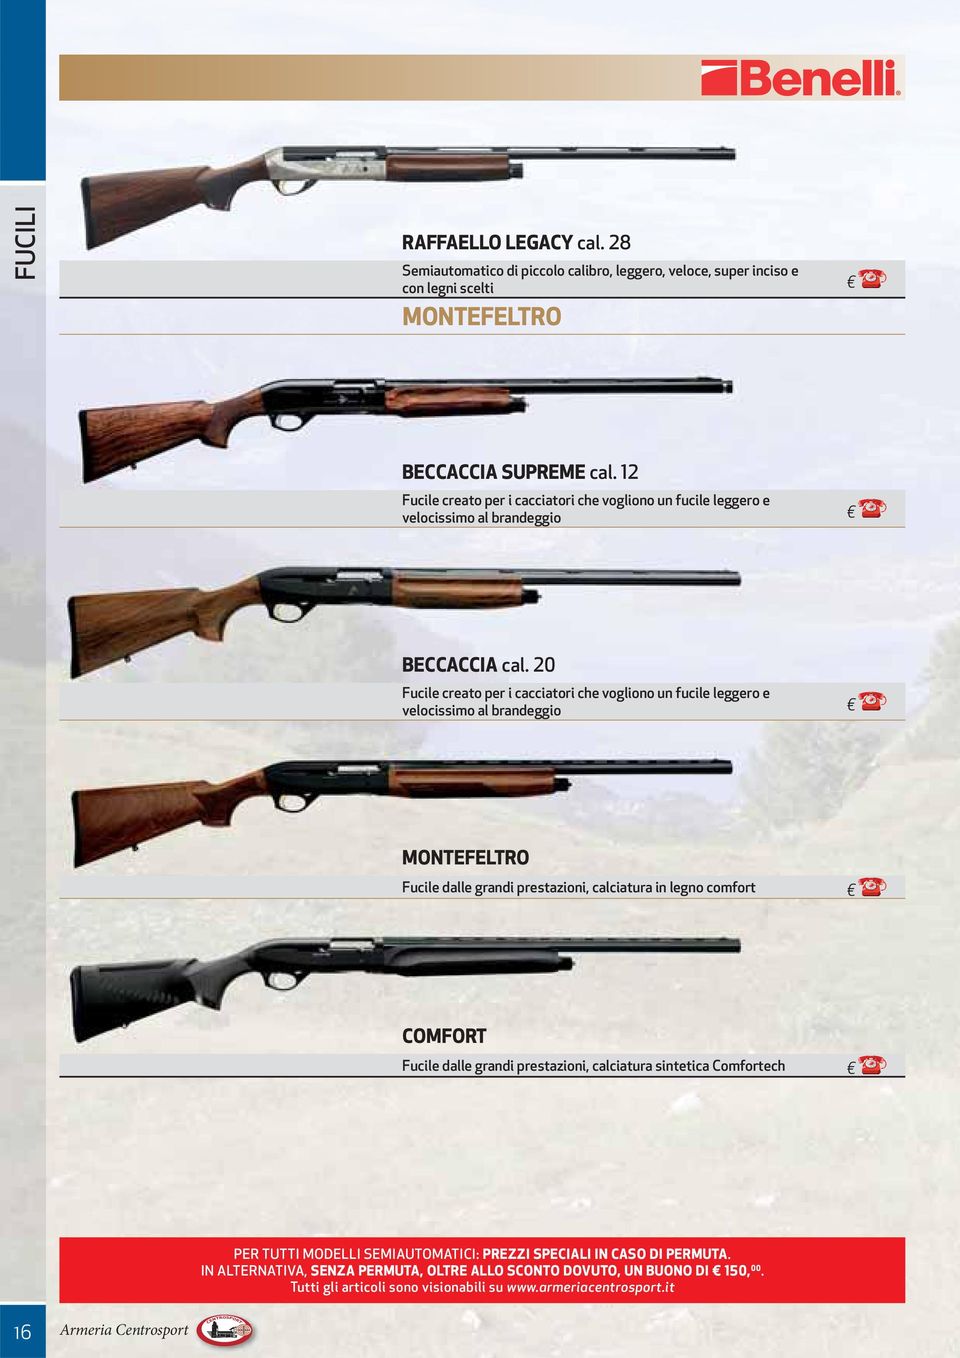 20 Fucile creato per i cacciatori che vogliono un fucile leggero e velocissimo al brandeggio MONTEFELTRO Fucile dalle grandi prestazioni, calciatura in legno comfort